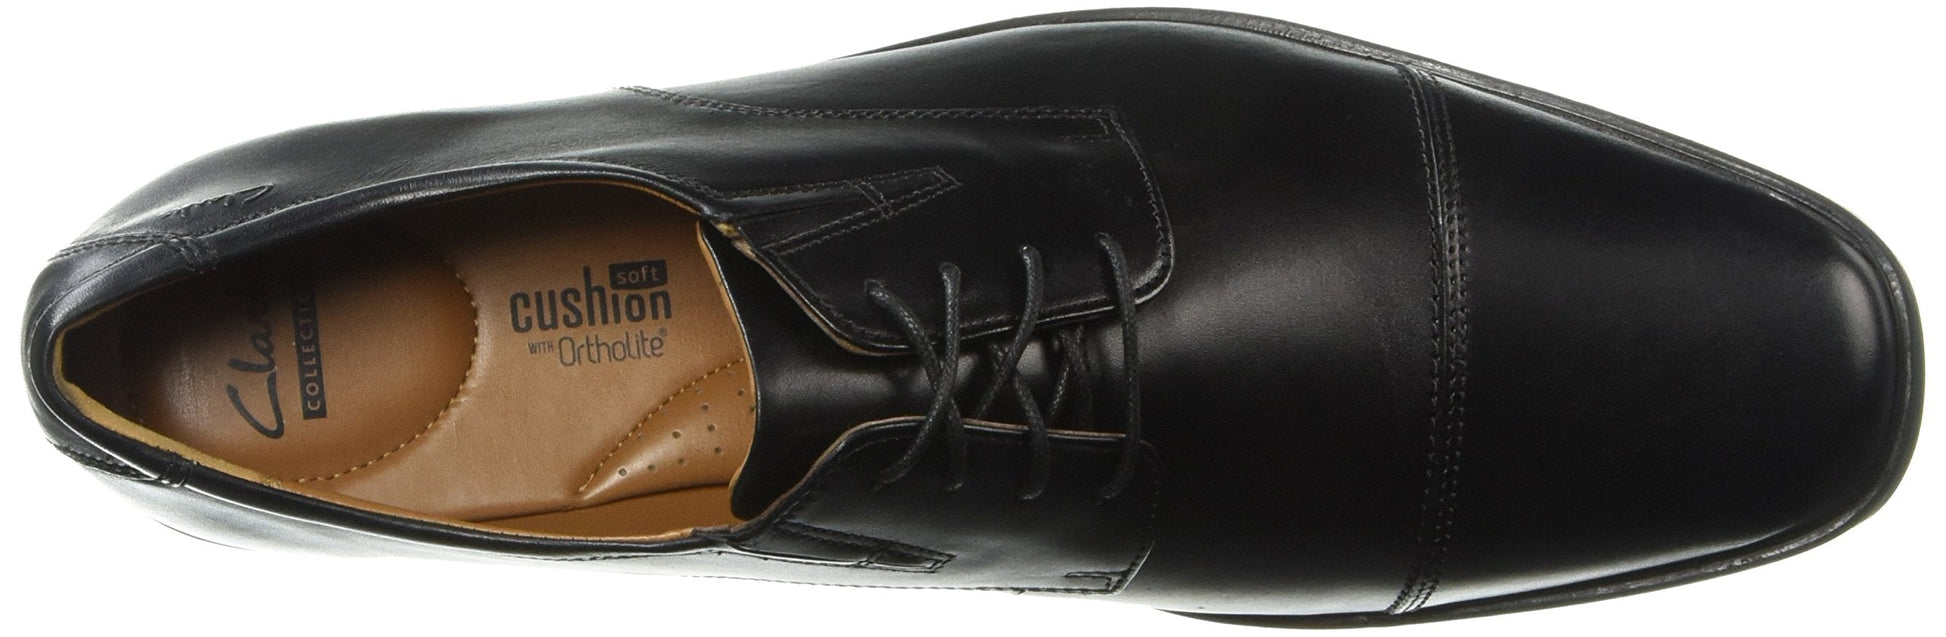 Clarks Men's Tilden Cap Black Leather Formal Shoes - 9 UK 